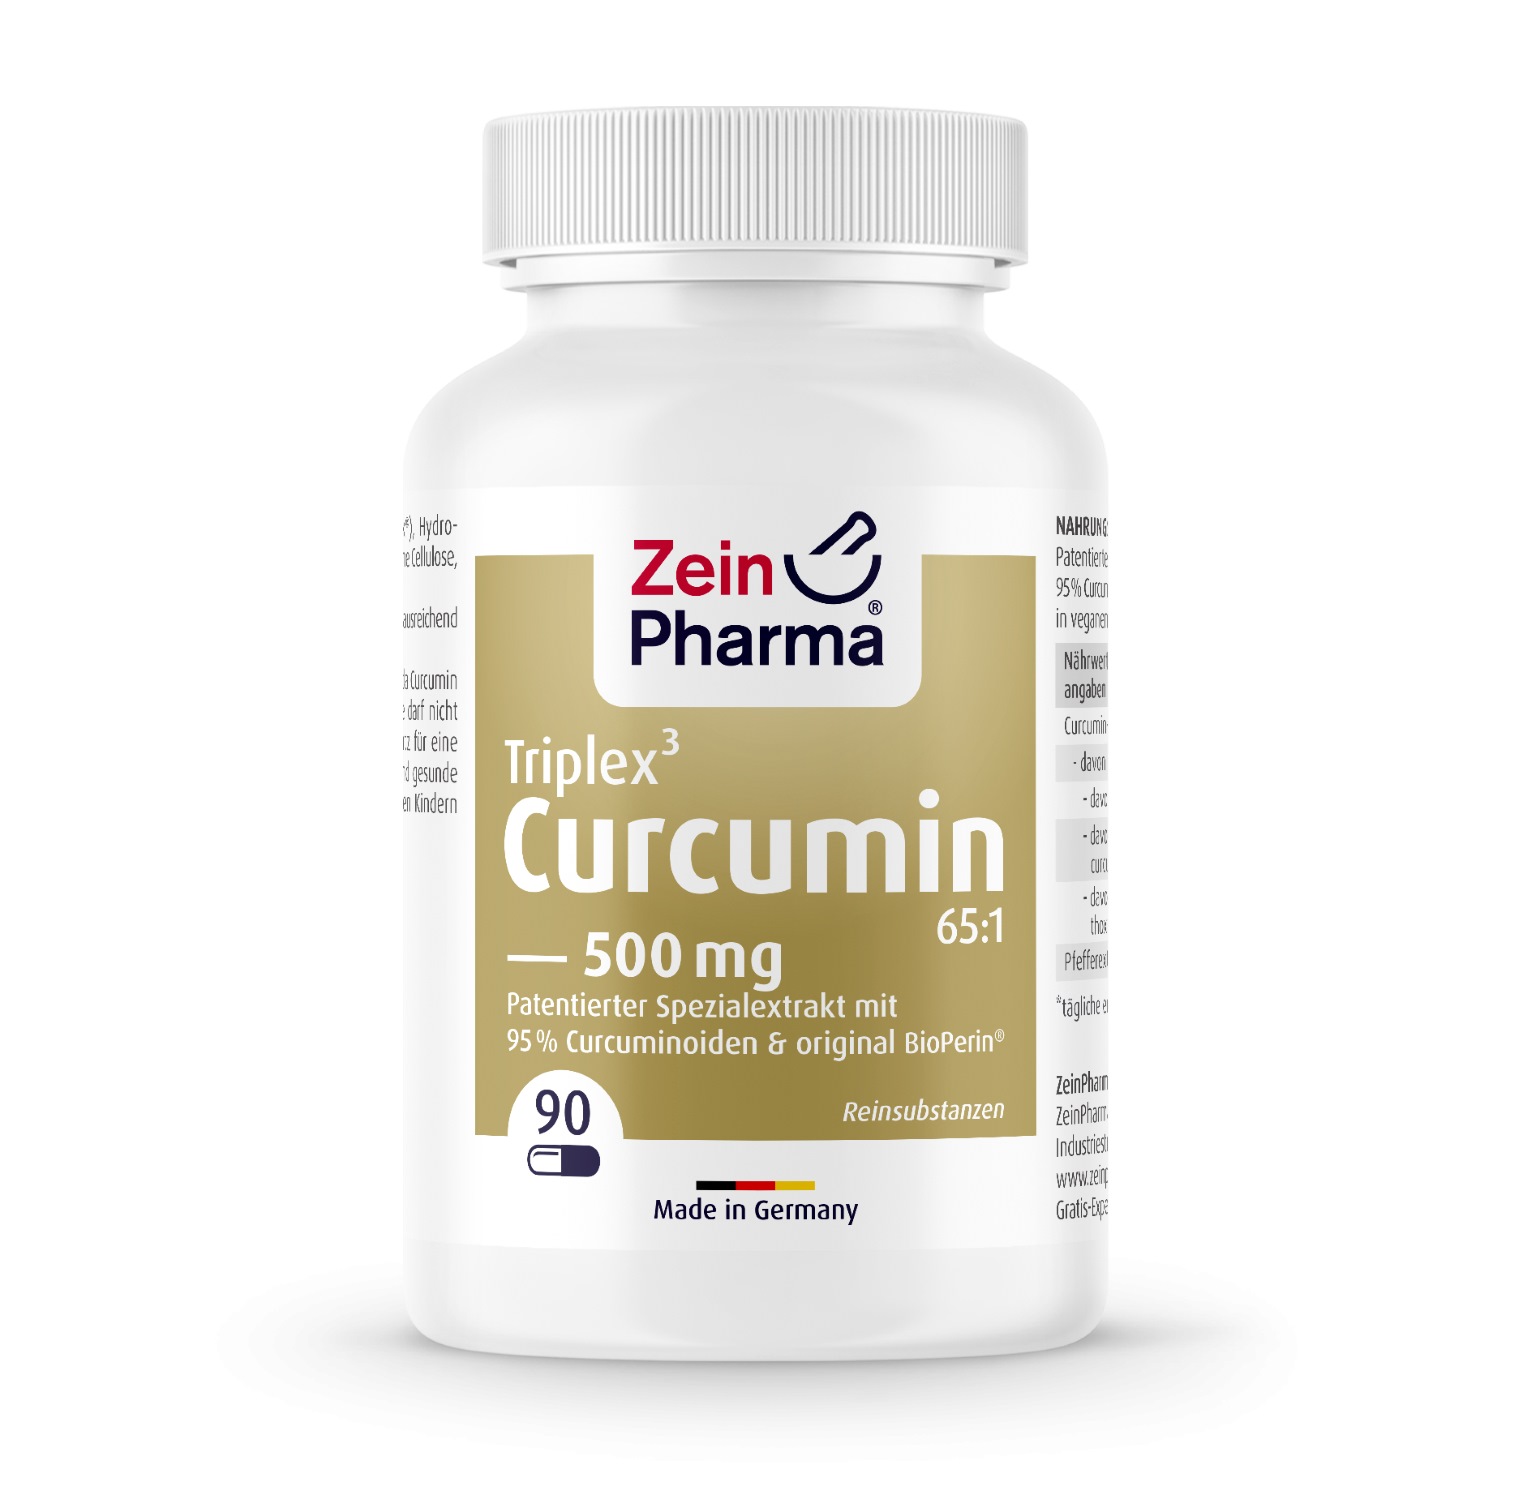 Curcumin-Triplex 500mg - 90 Kapseln